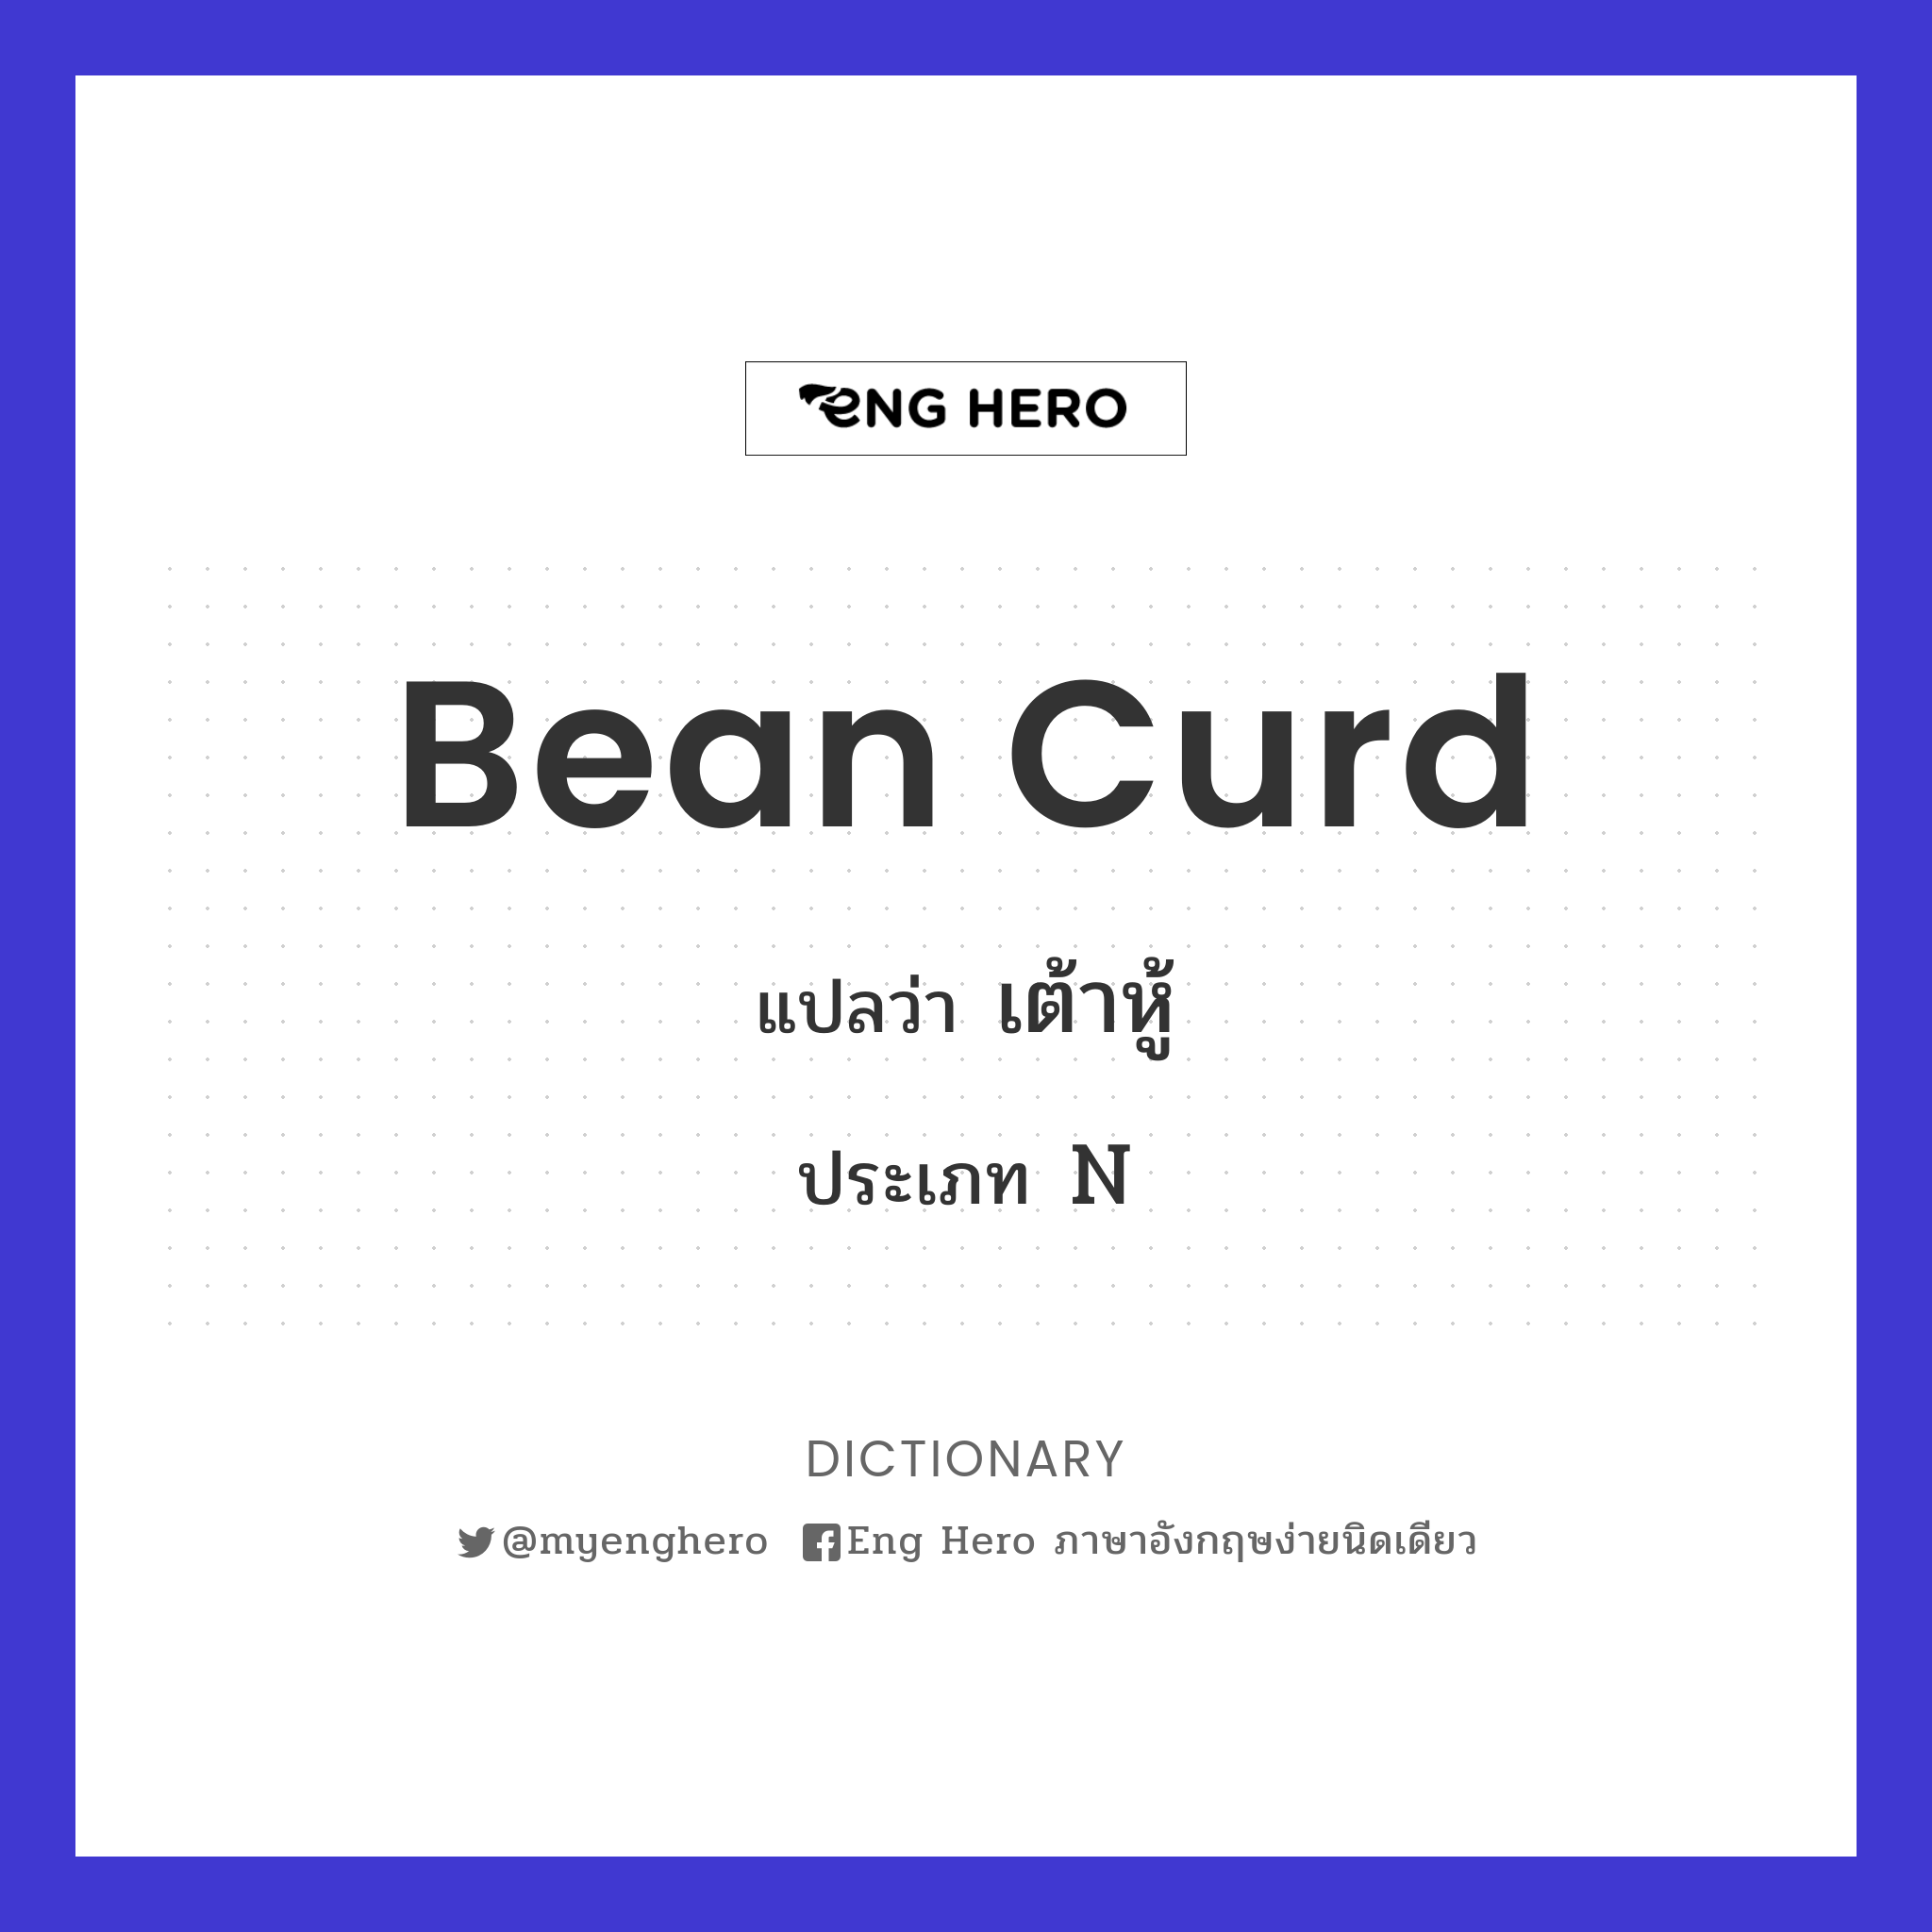 bean curd